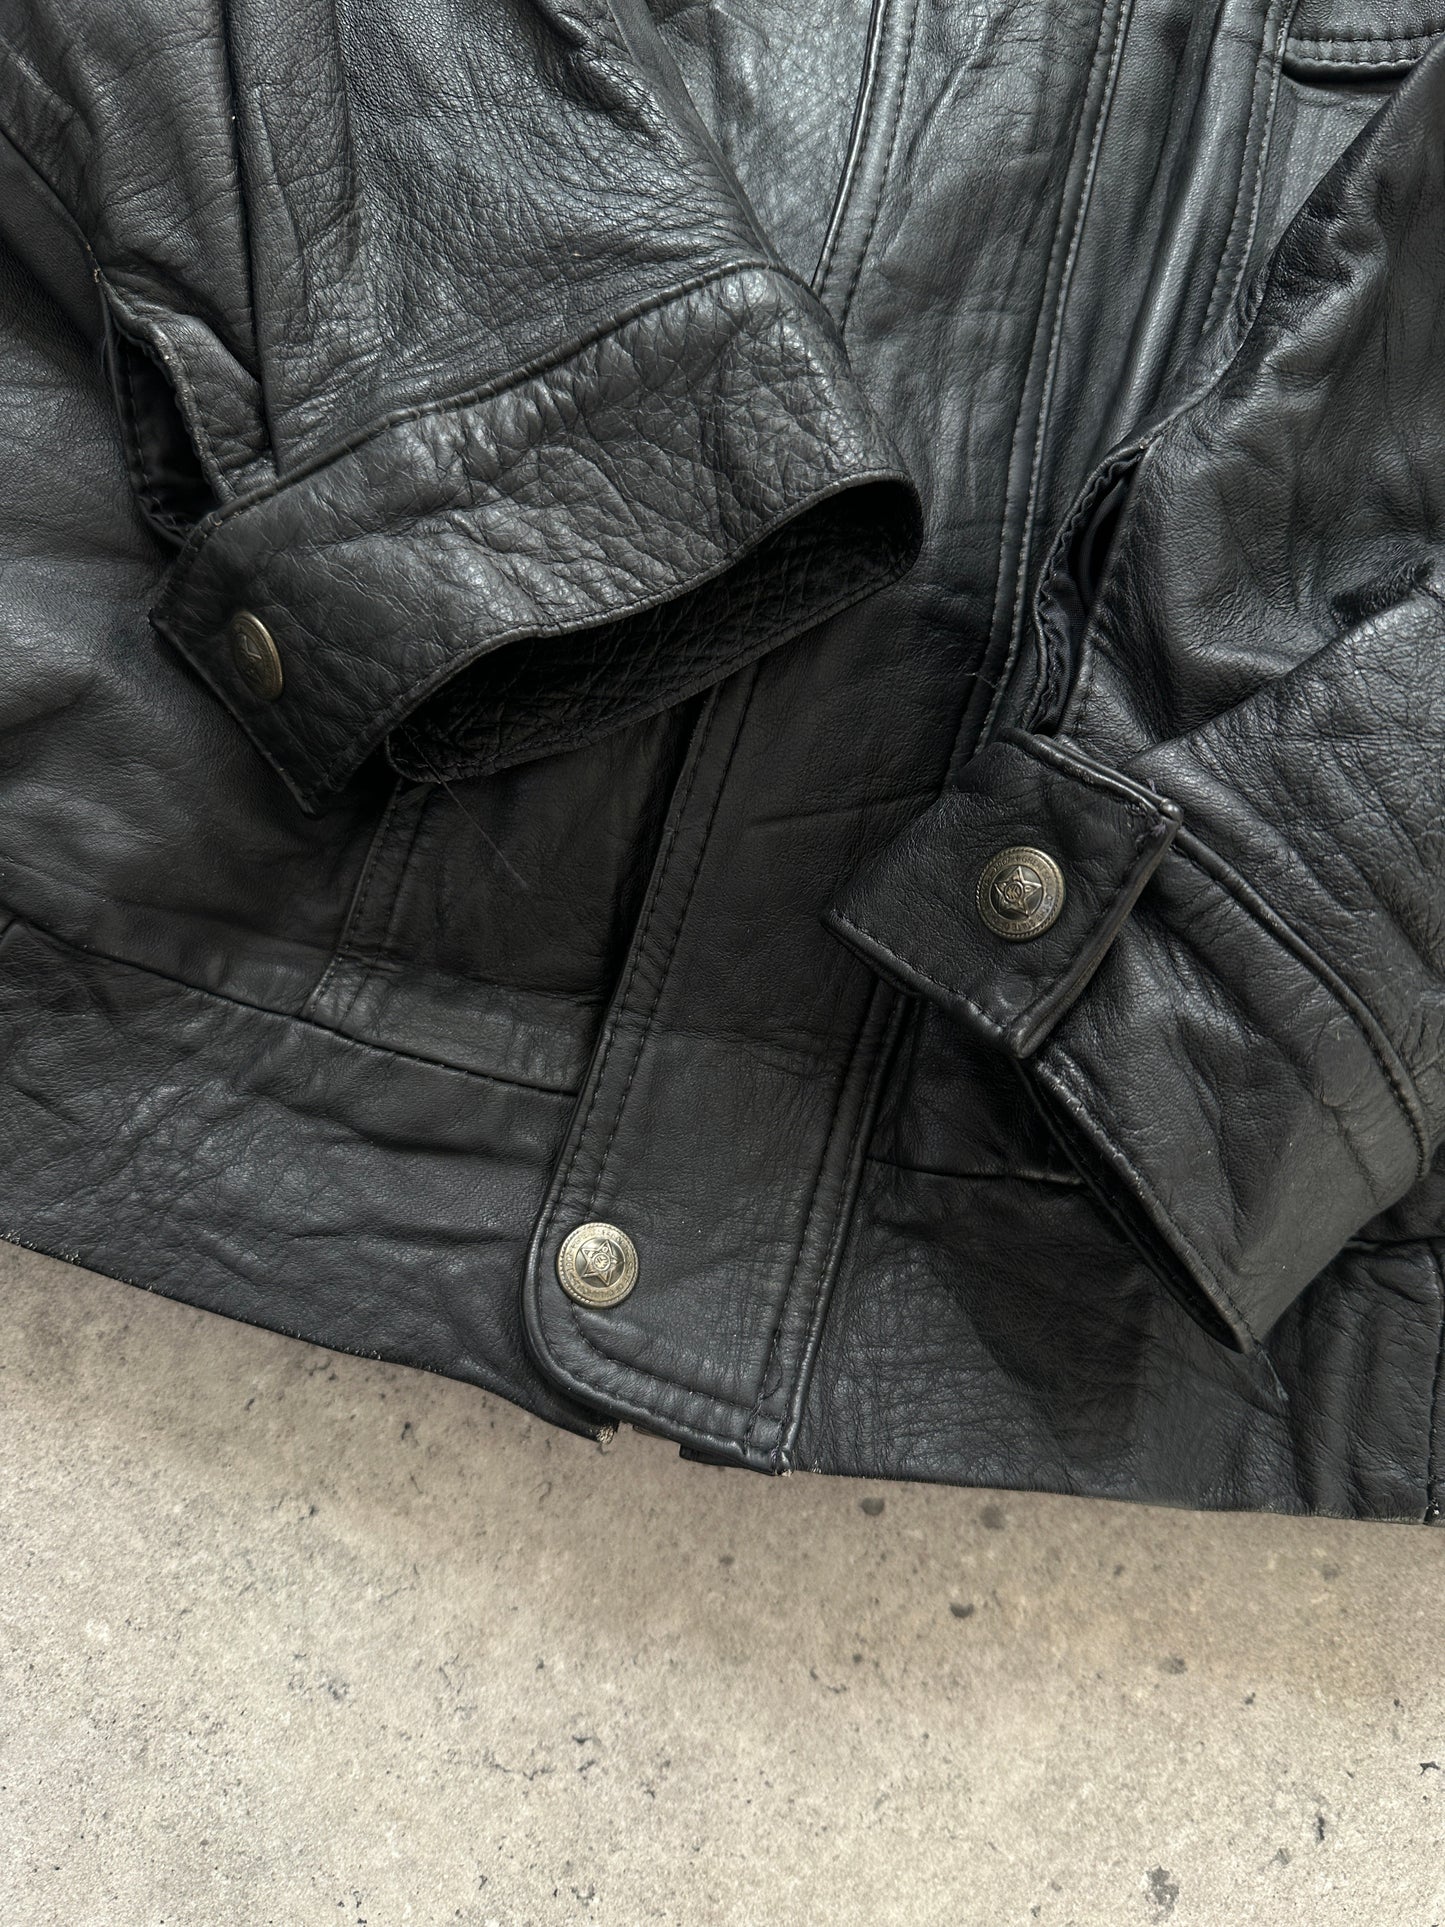 Vintage Leather Bomber Jacket - M/L